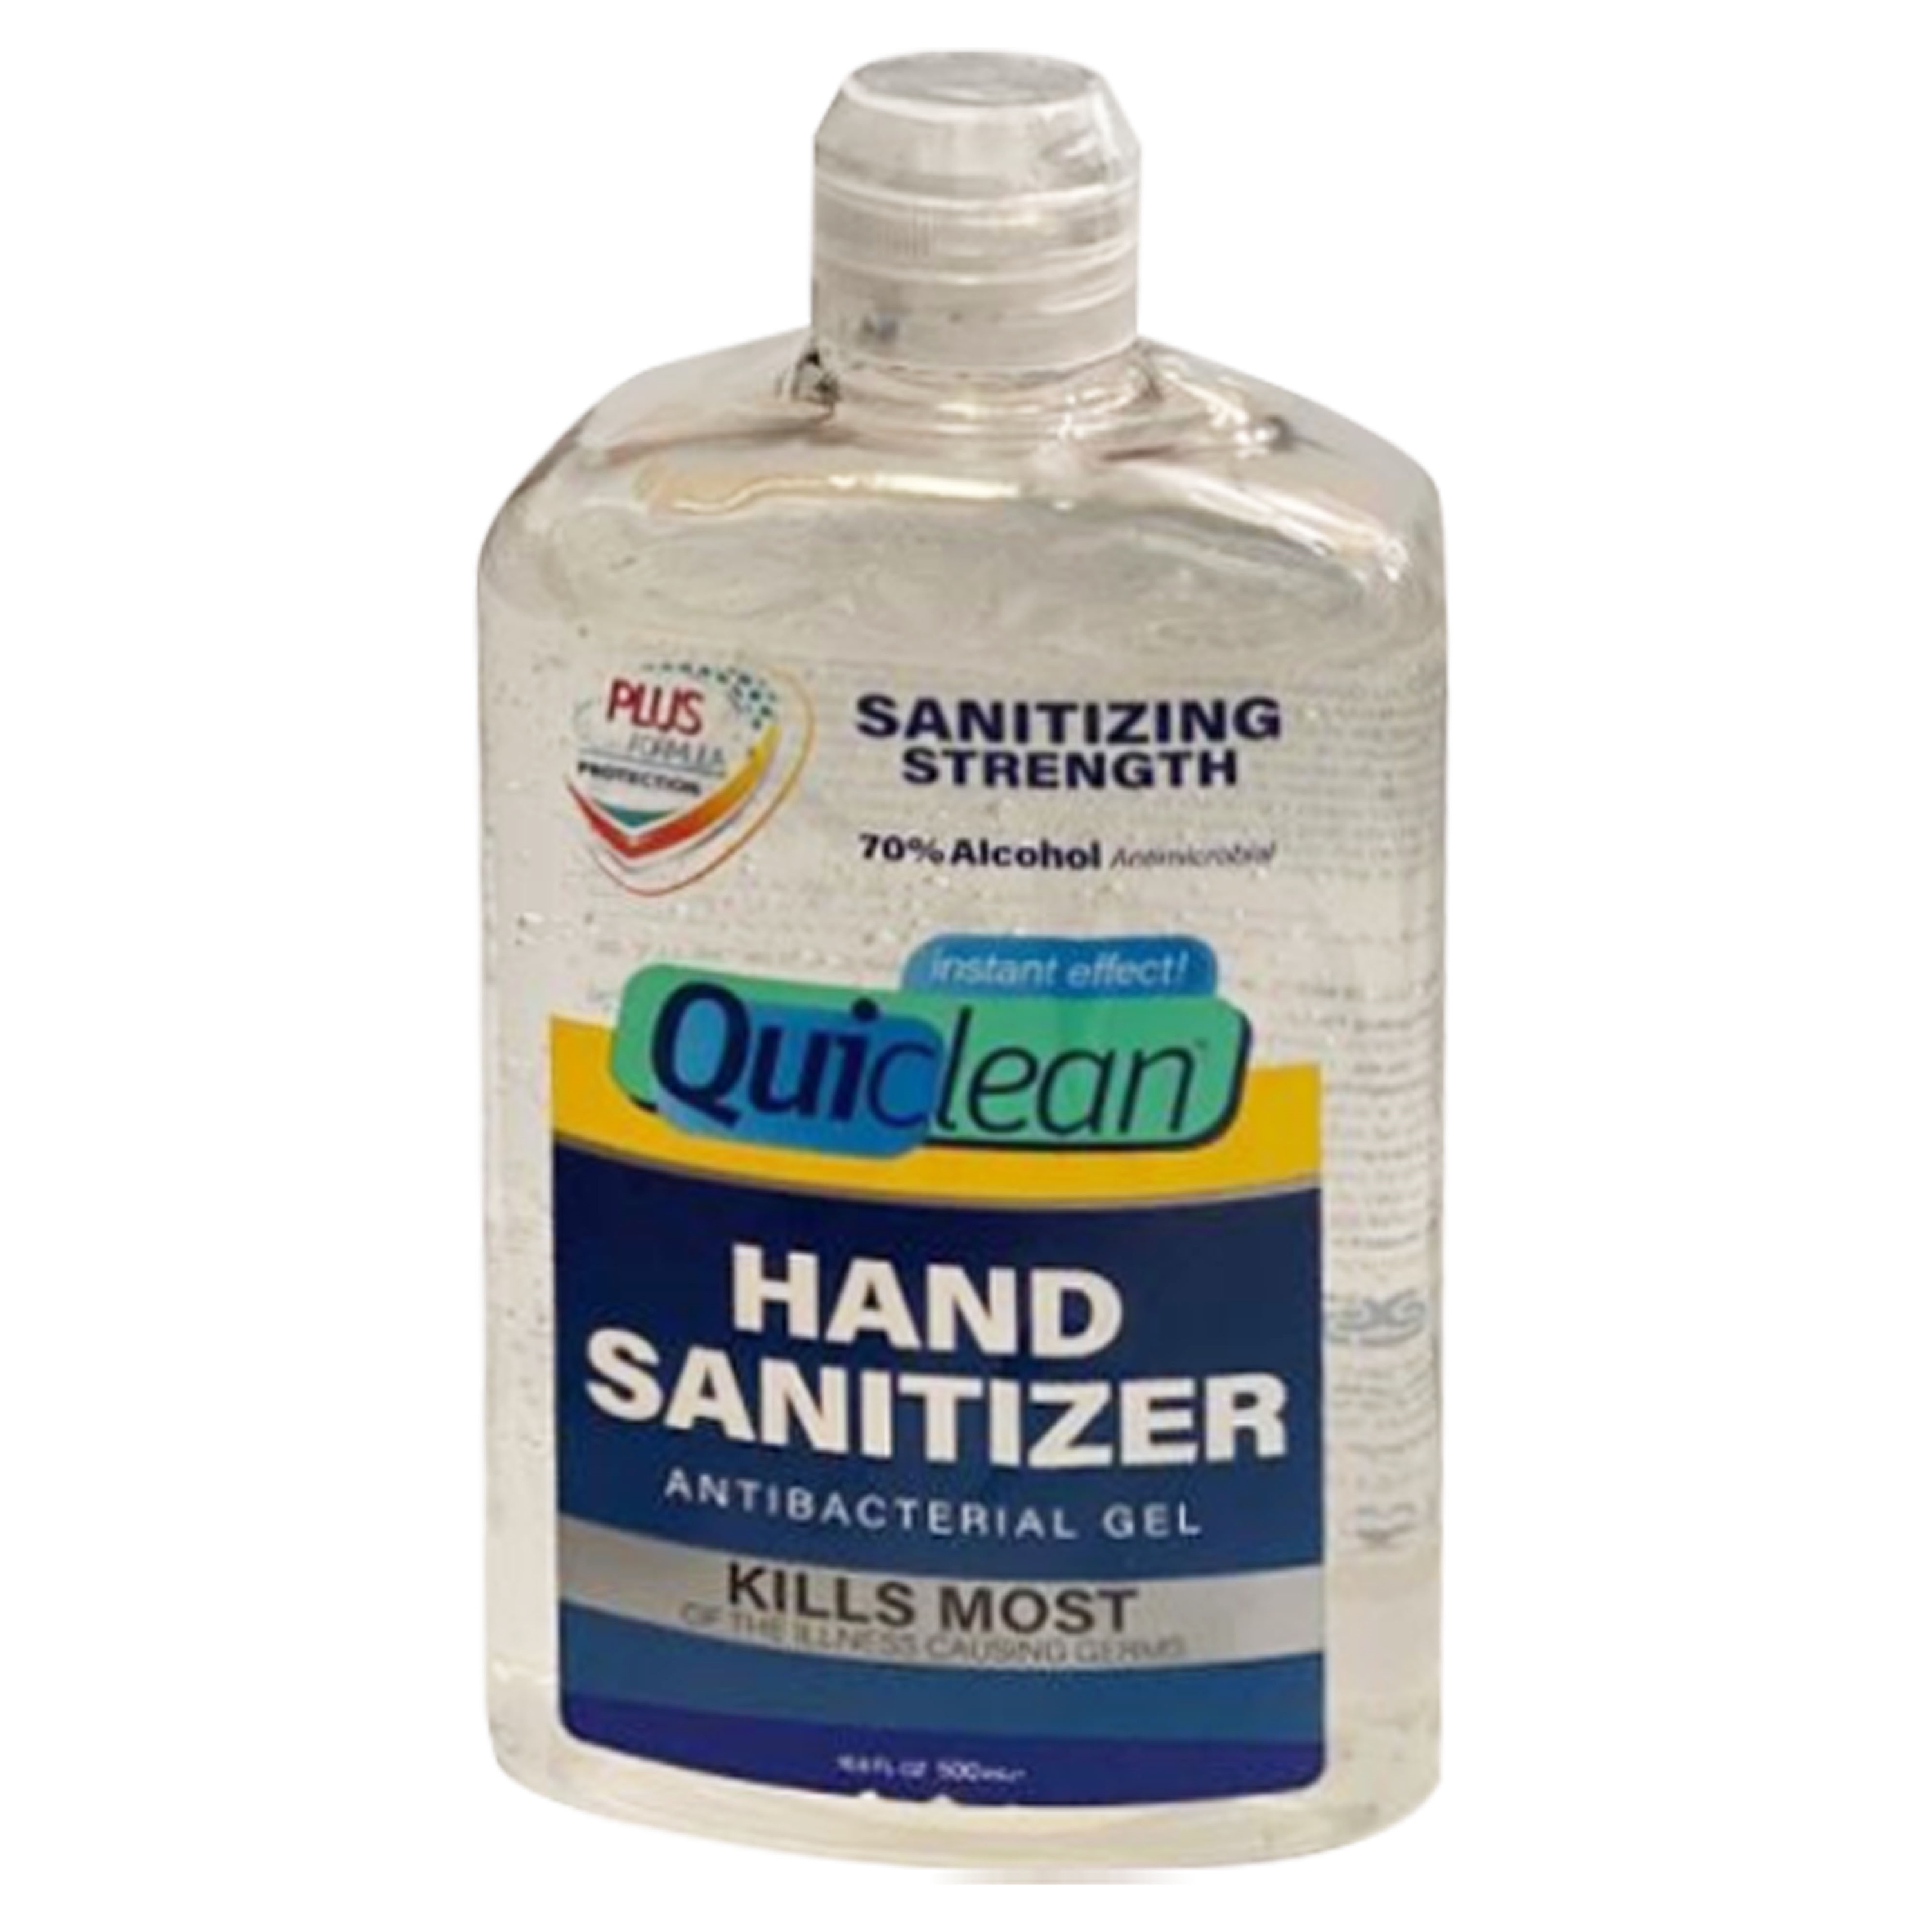 Picture of Fles quiclean desinfecterende handgel 250 ml (uc) 